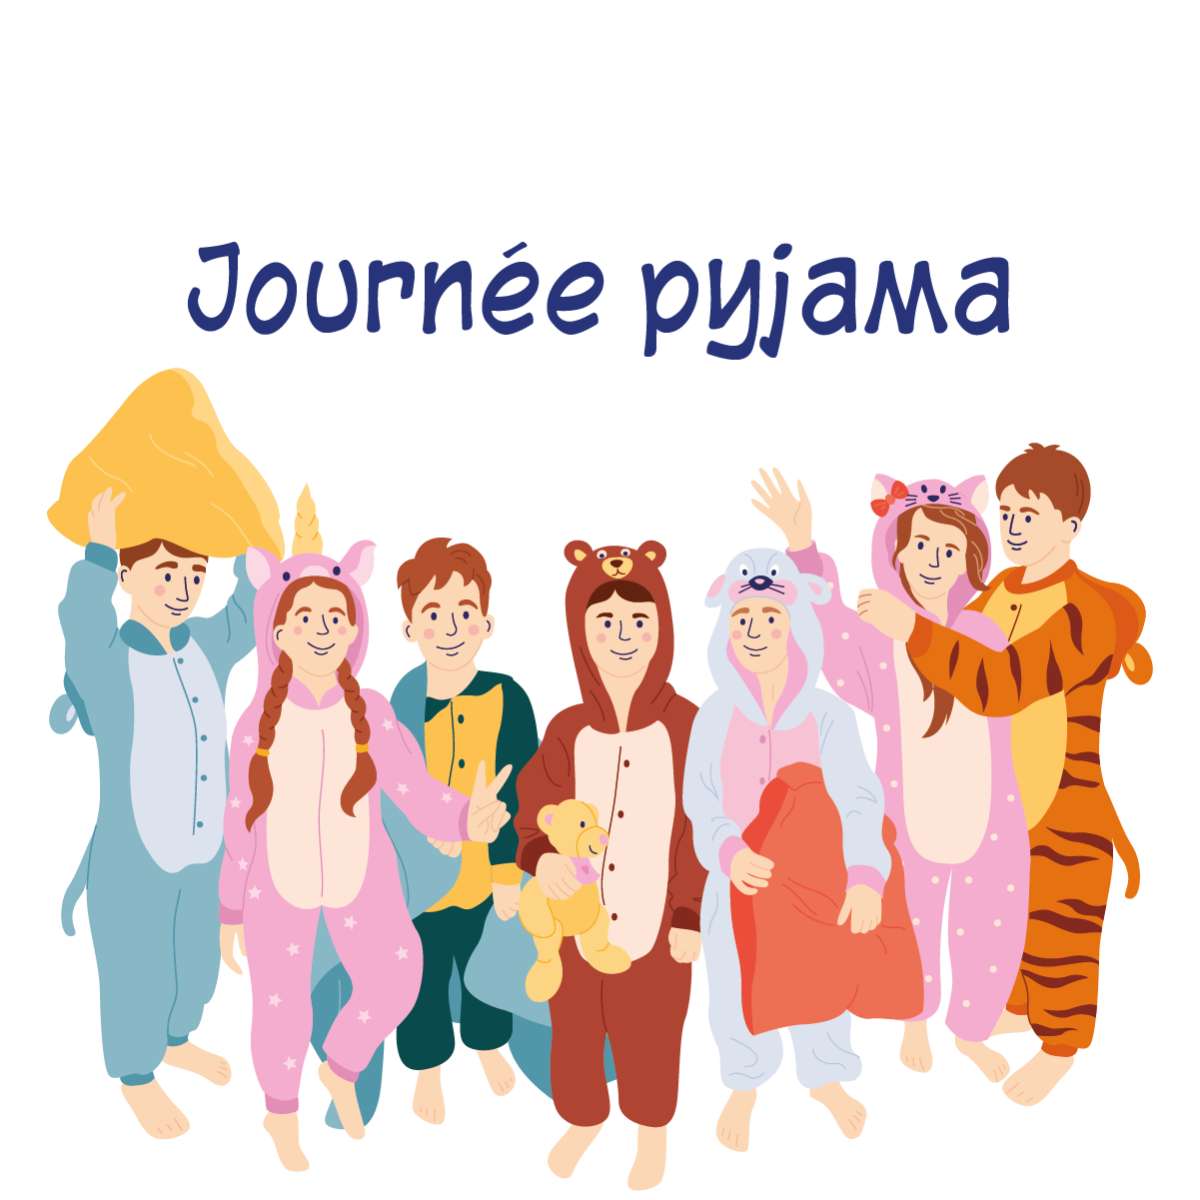 pyjama de voyage puzzle en ligne à partir d'une photo